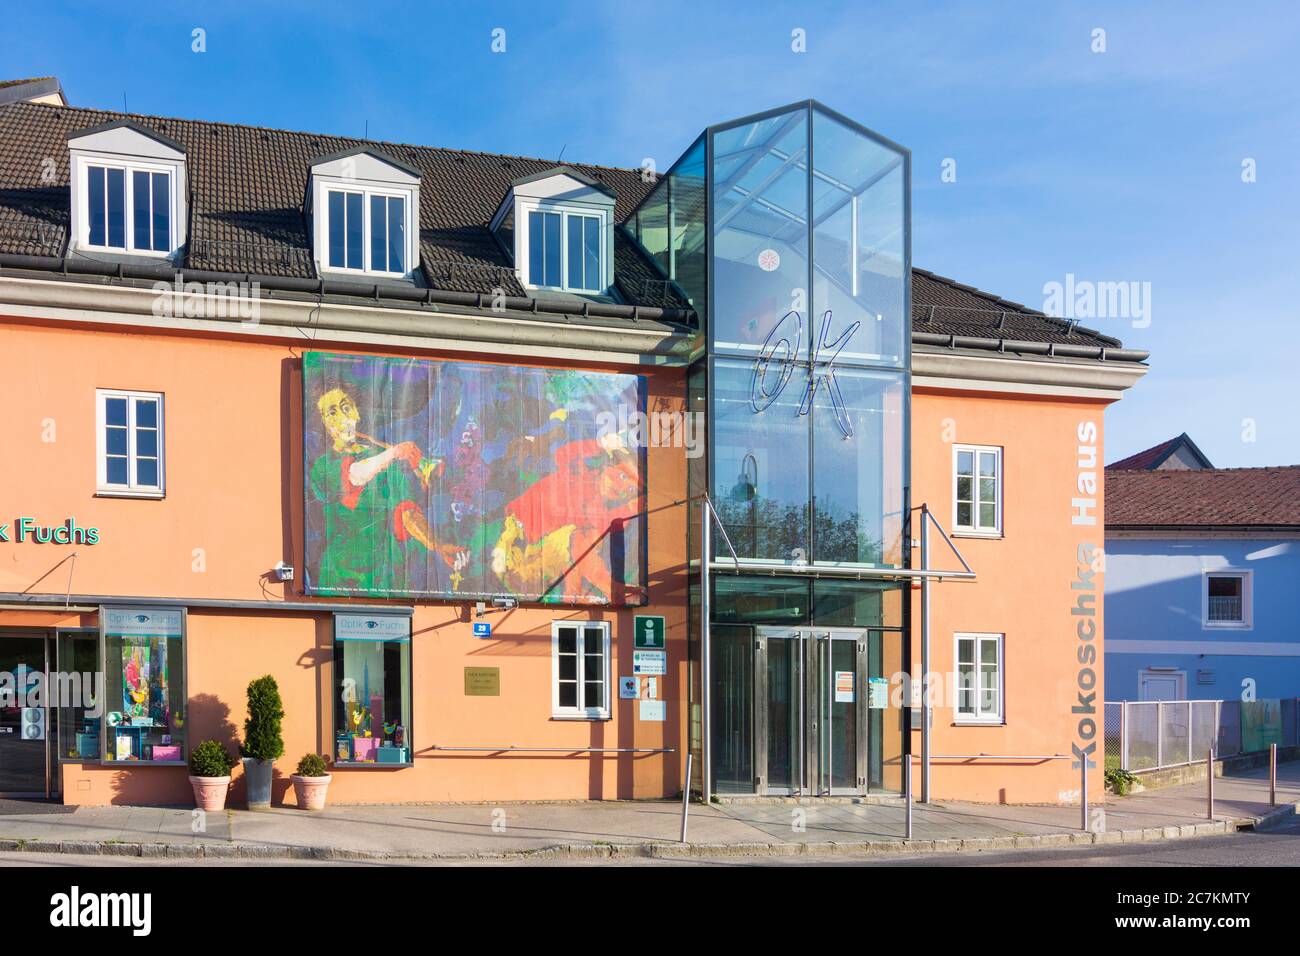 Pöchlarn, museum Kokoschka-Haus, Mostviertel region, Niederösterreich / Lower Austria, Austria Stock Photo